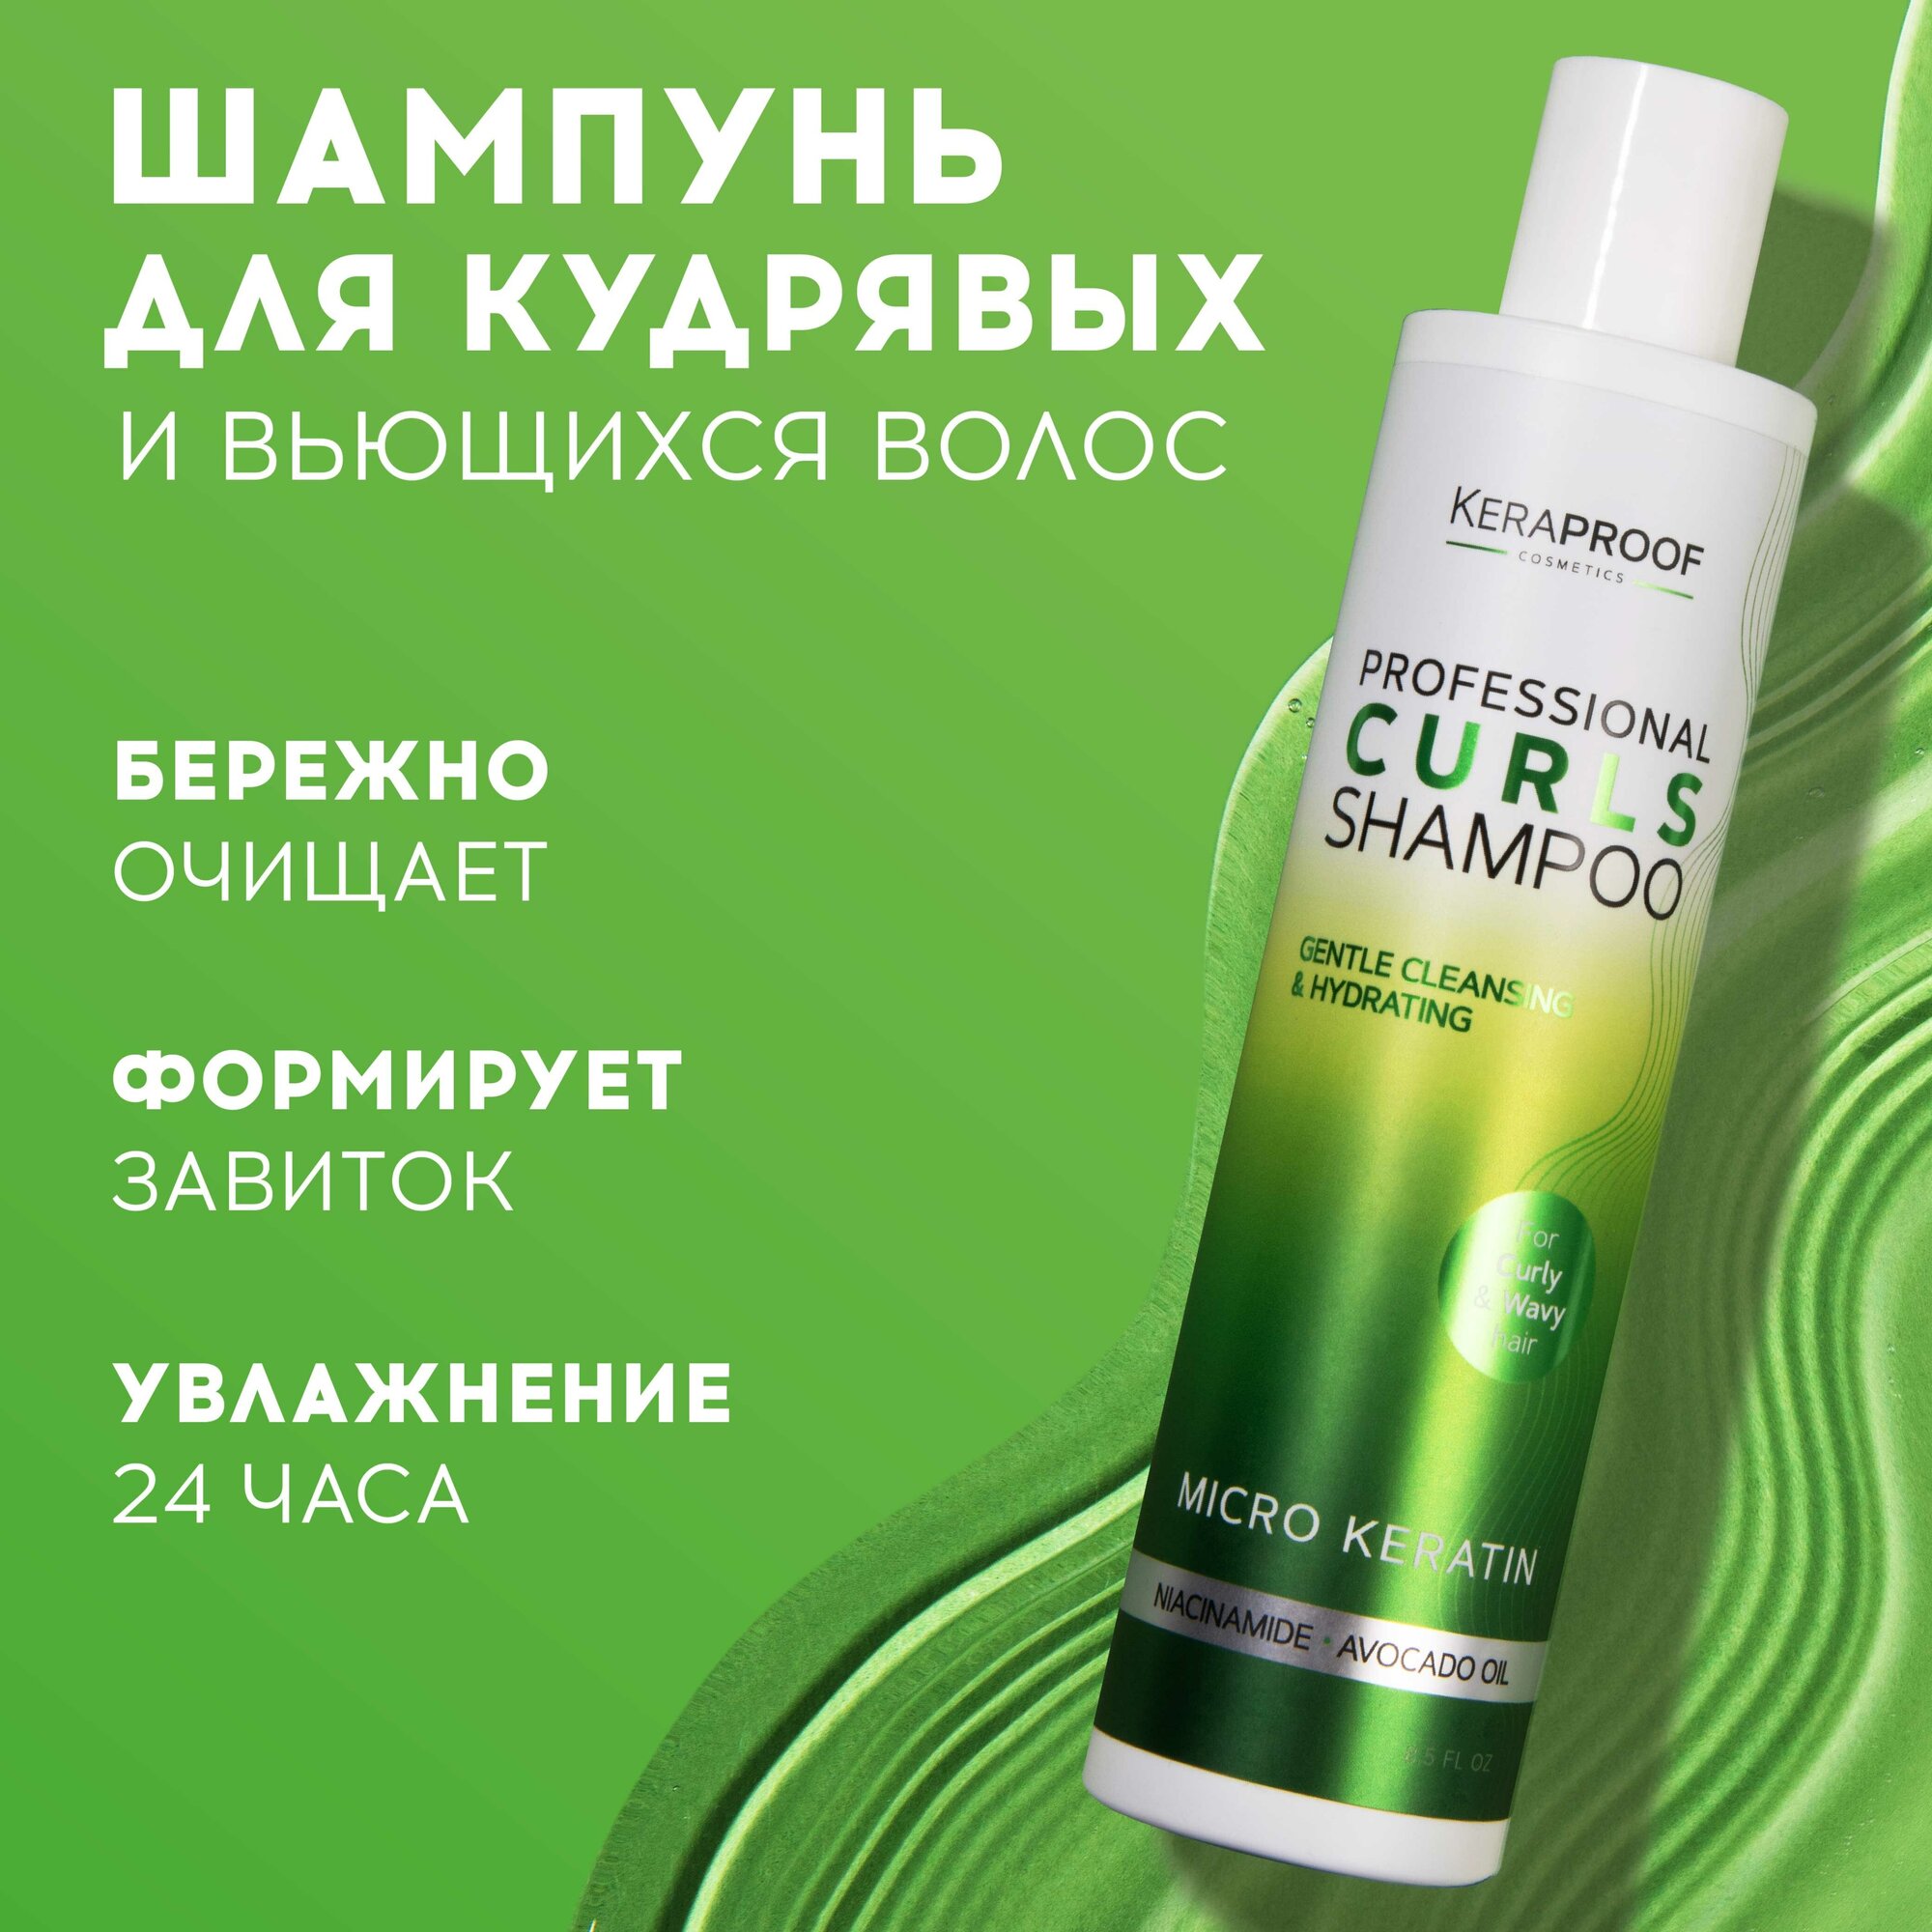 Шампунь для волос Keraproof Curl Enhancing Shampoo 250мл ДжиЭсЭс Косметикс - фото №1